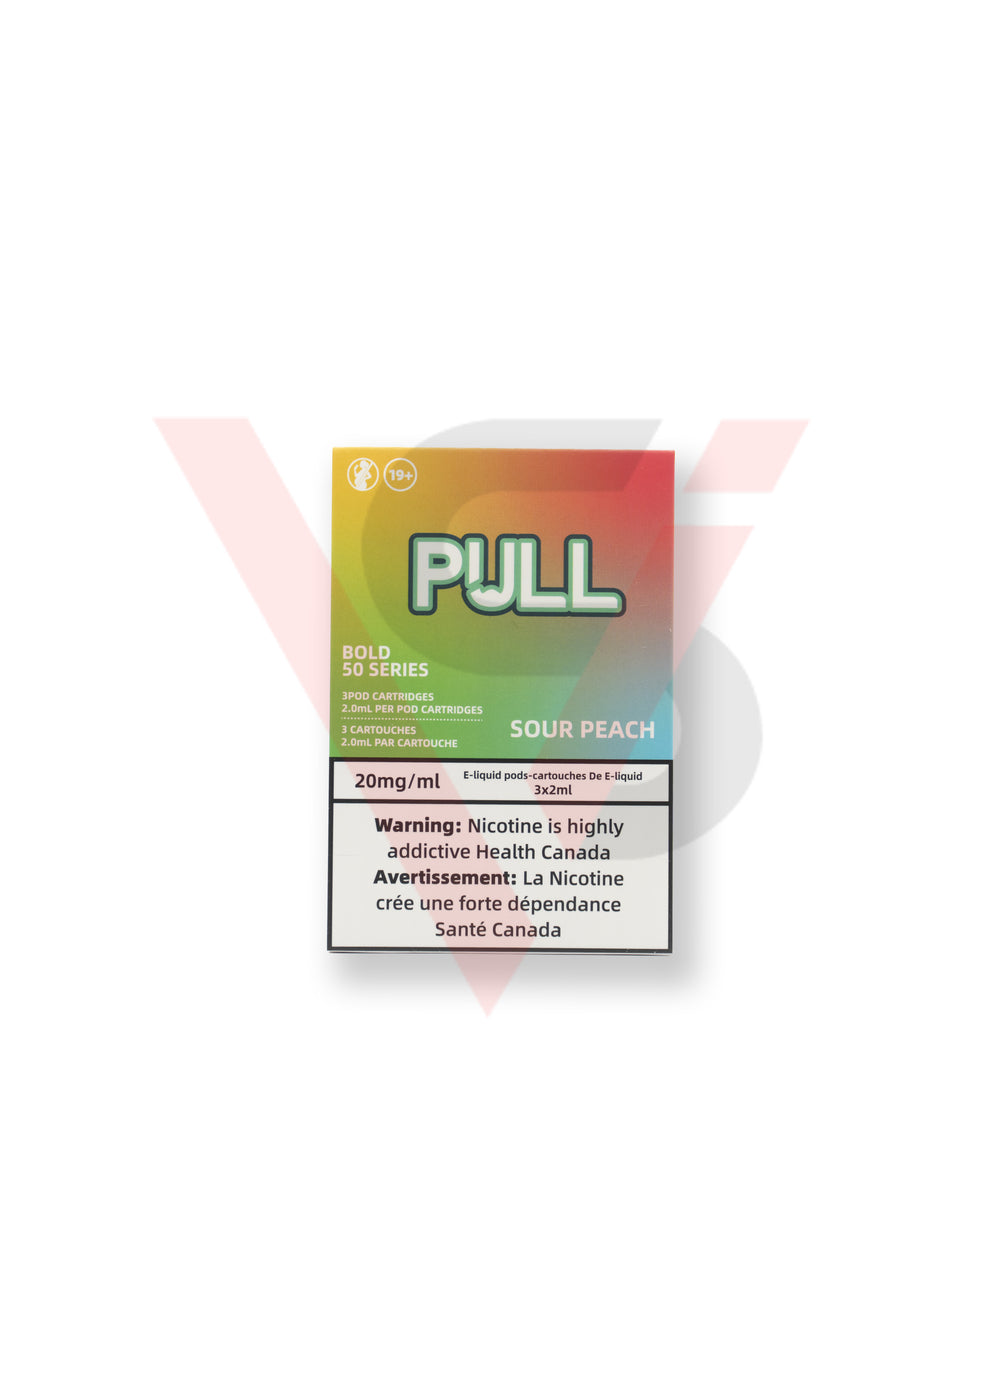 PULL Pod (STLTH compatible)- SOUR PEACH